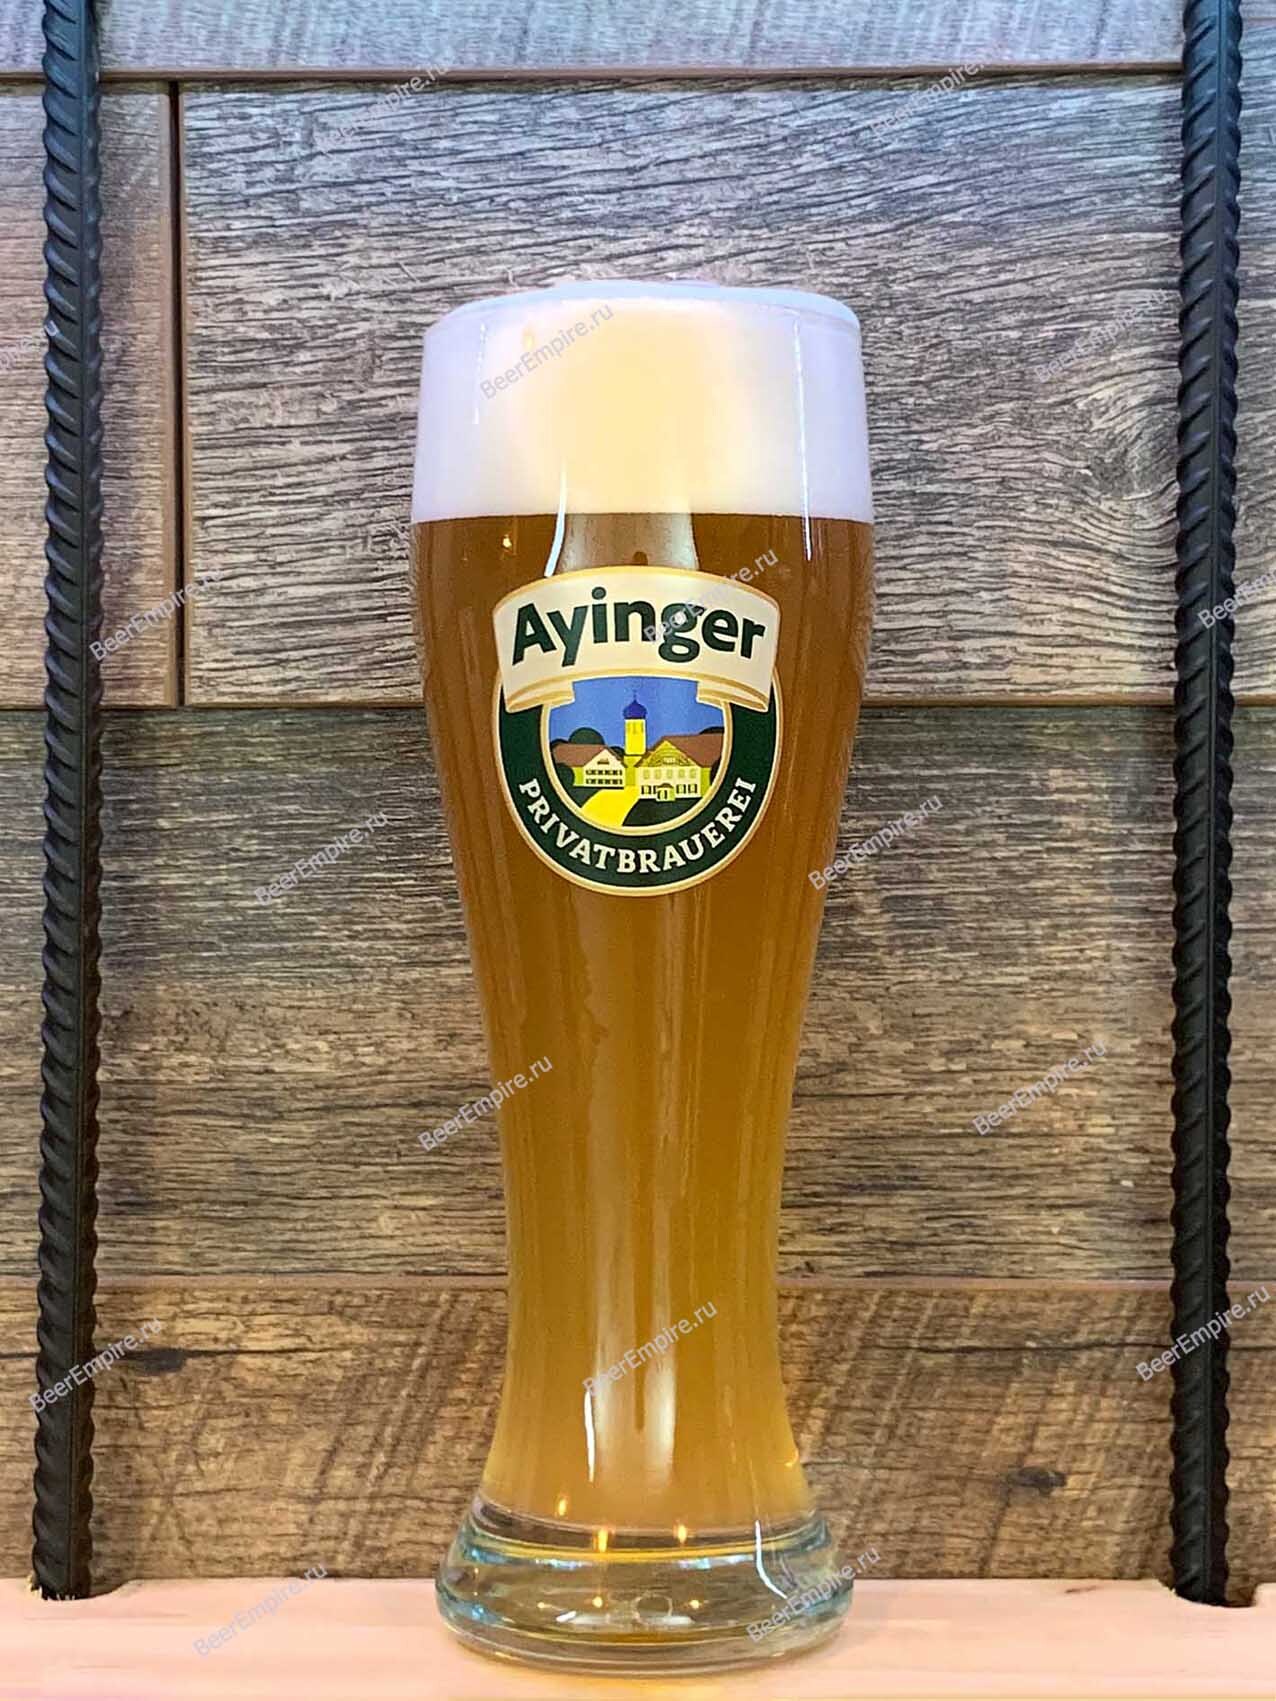 Пиво ayinger купить. Ayinger пиво пшеничное. Безалкогольное пиво Ayinger. Айингер Бройвайссе пиво. Пиво Айингер фестмэрцен.